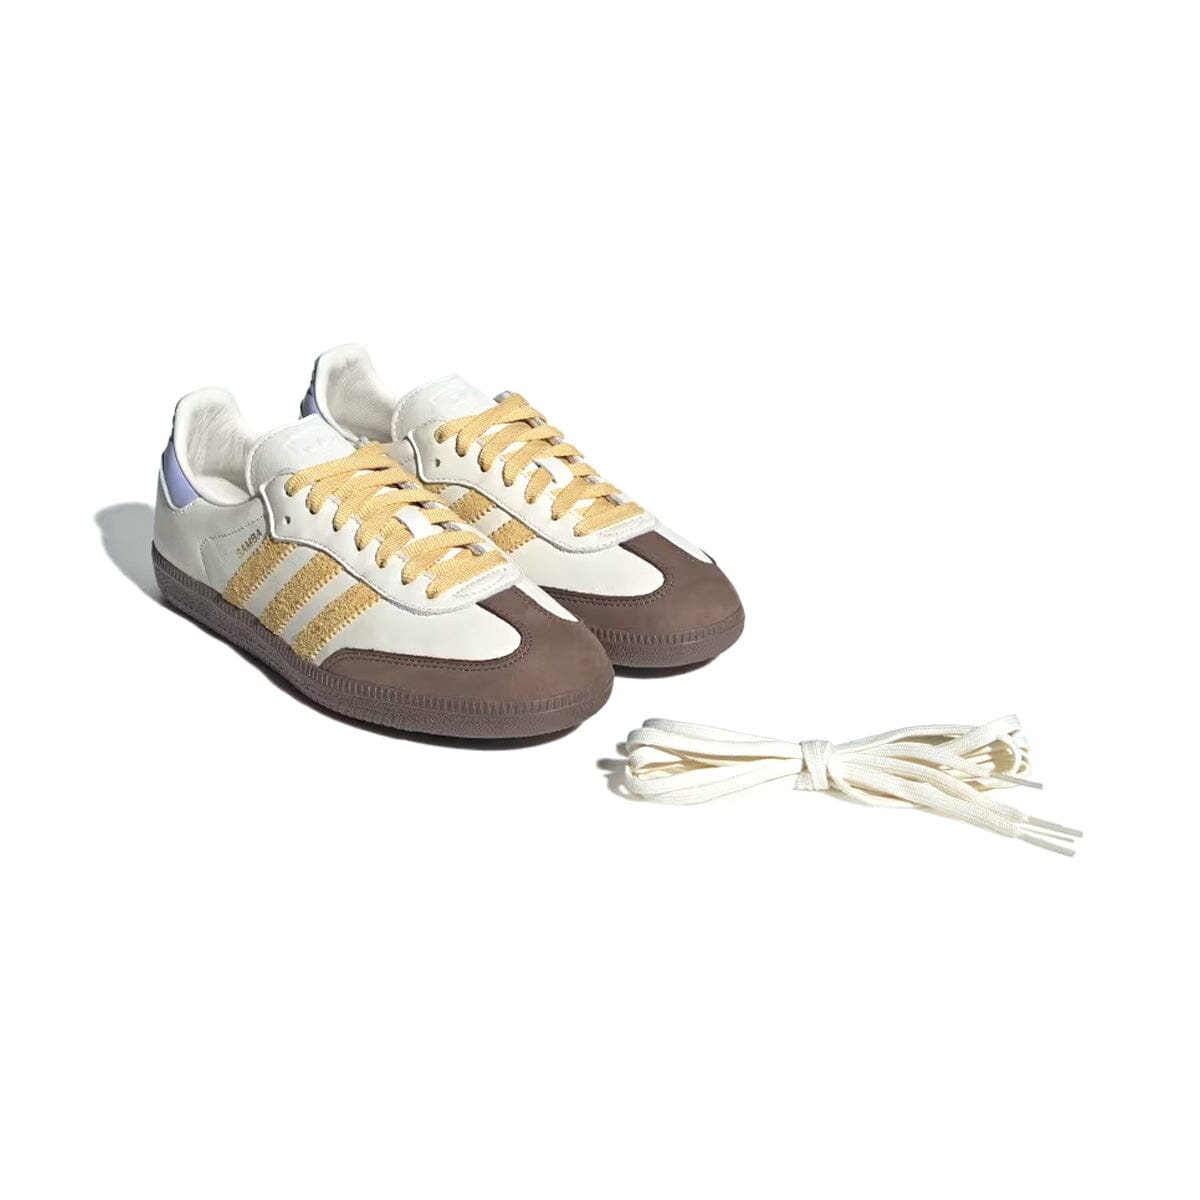 Adidas Samba OG Amarelo "Off White Oat Violet Tone" Adidas Samba Blizz Sneakers 